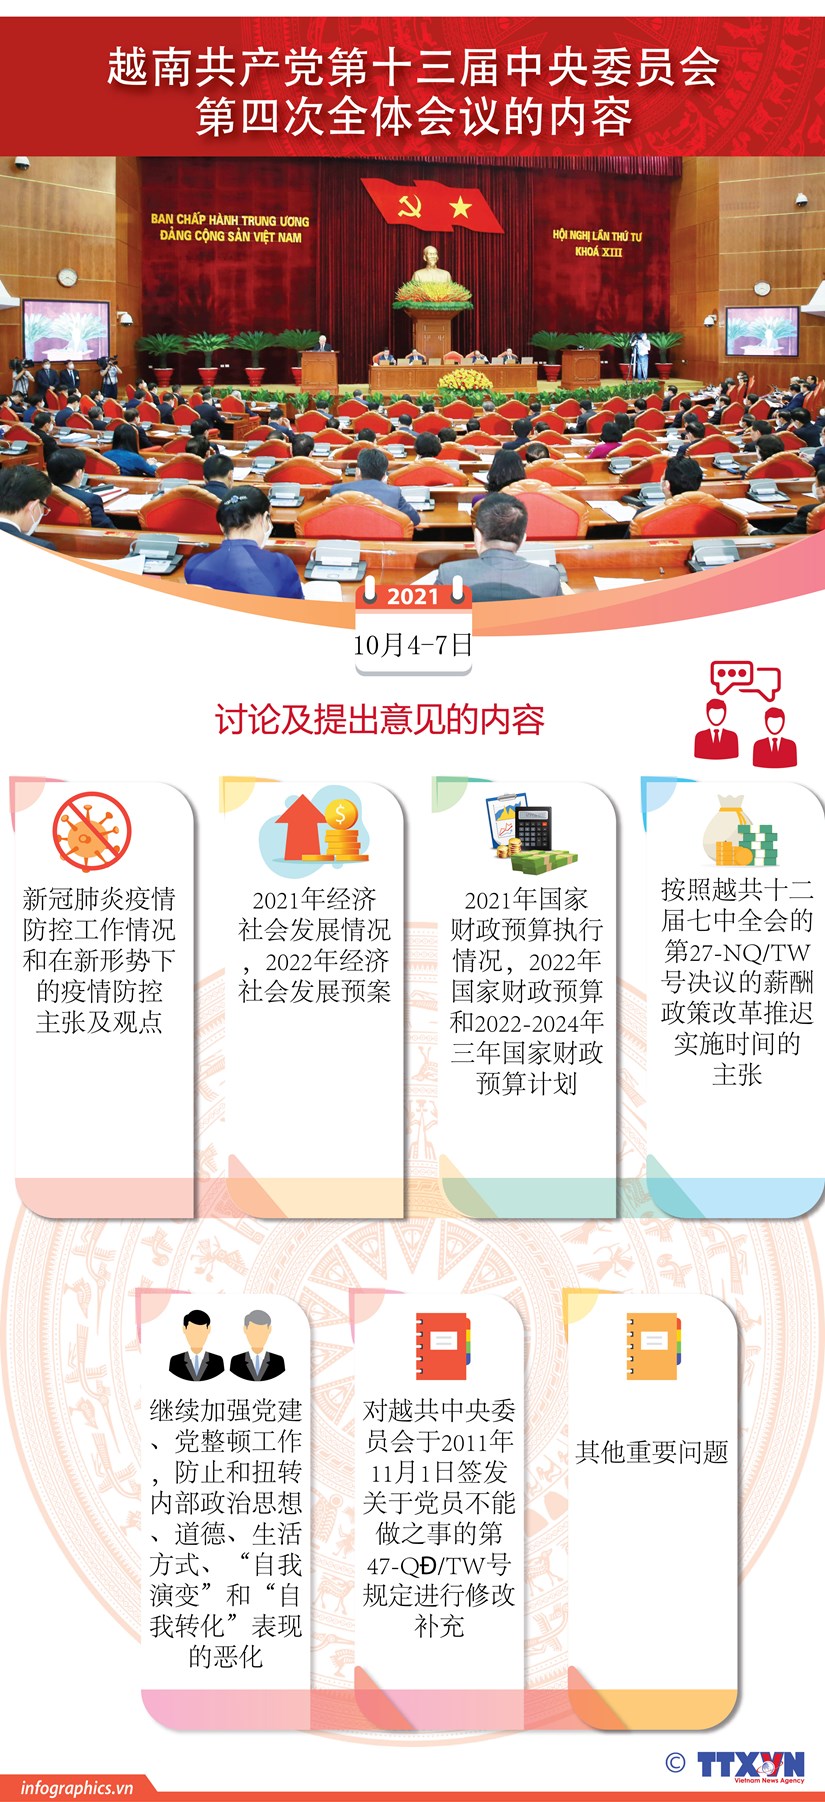 图表新闻：越共第十三届中央委员会第四次全体会议的内容 hinh anh 1